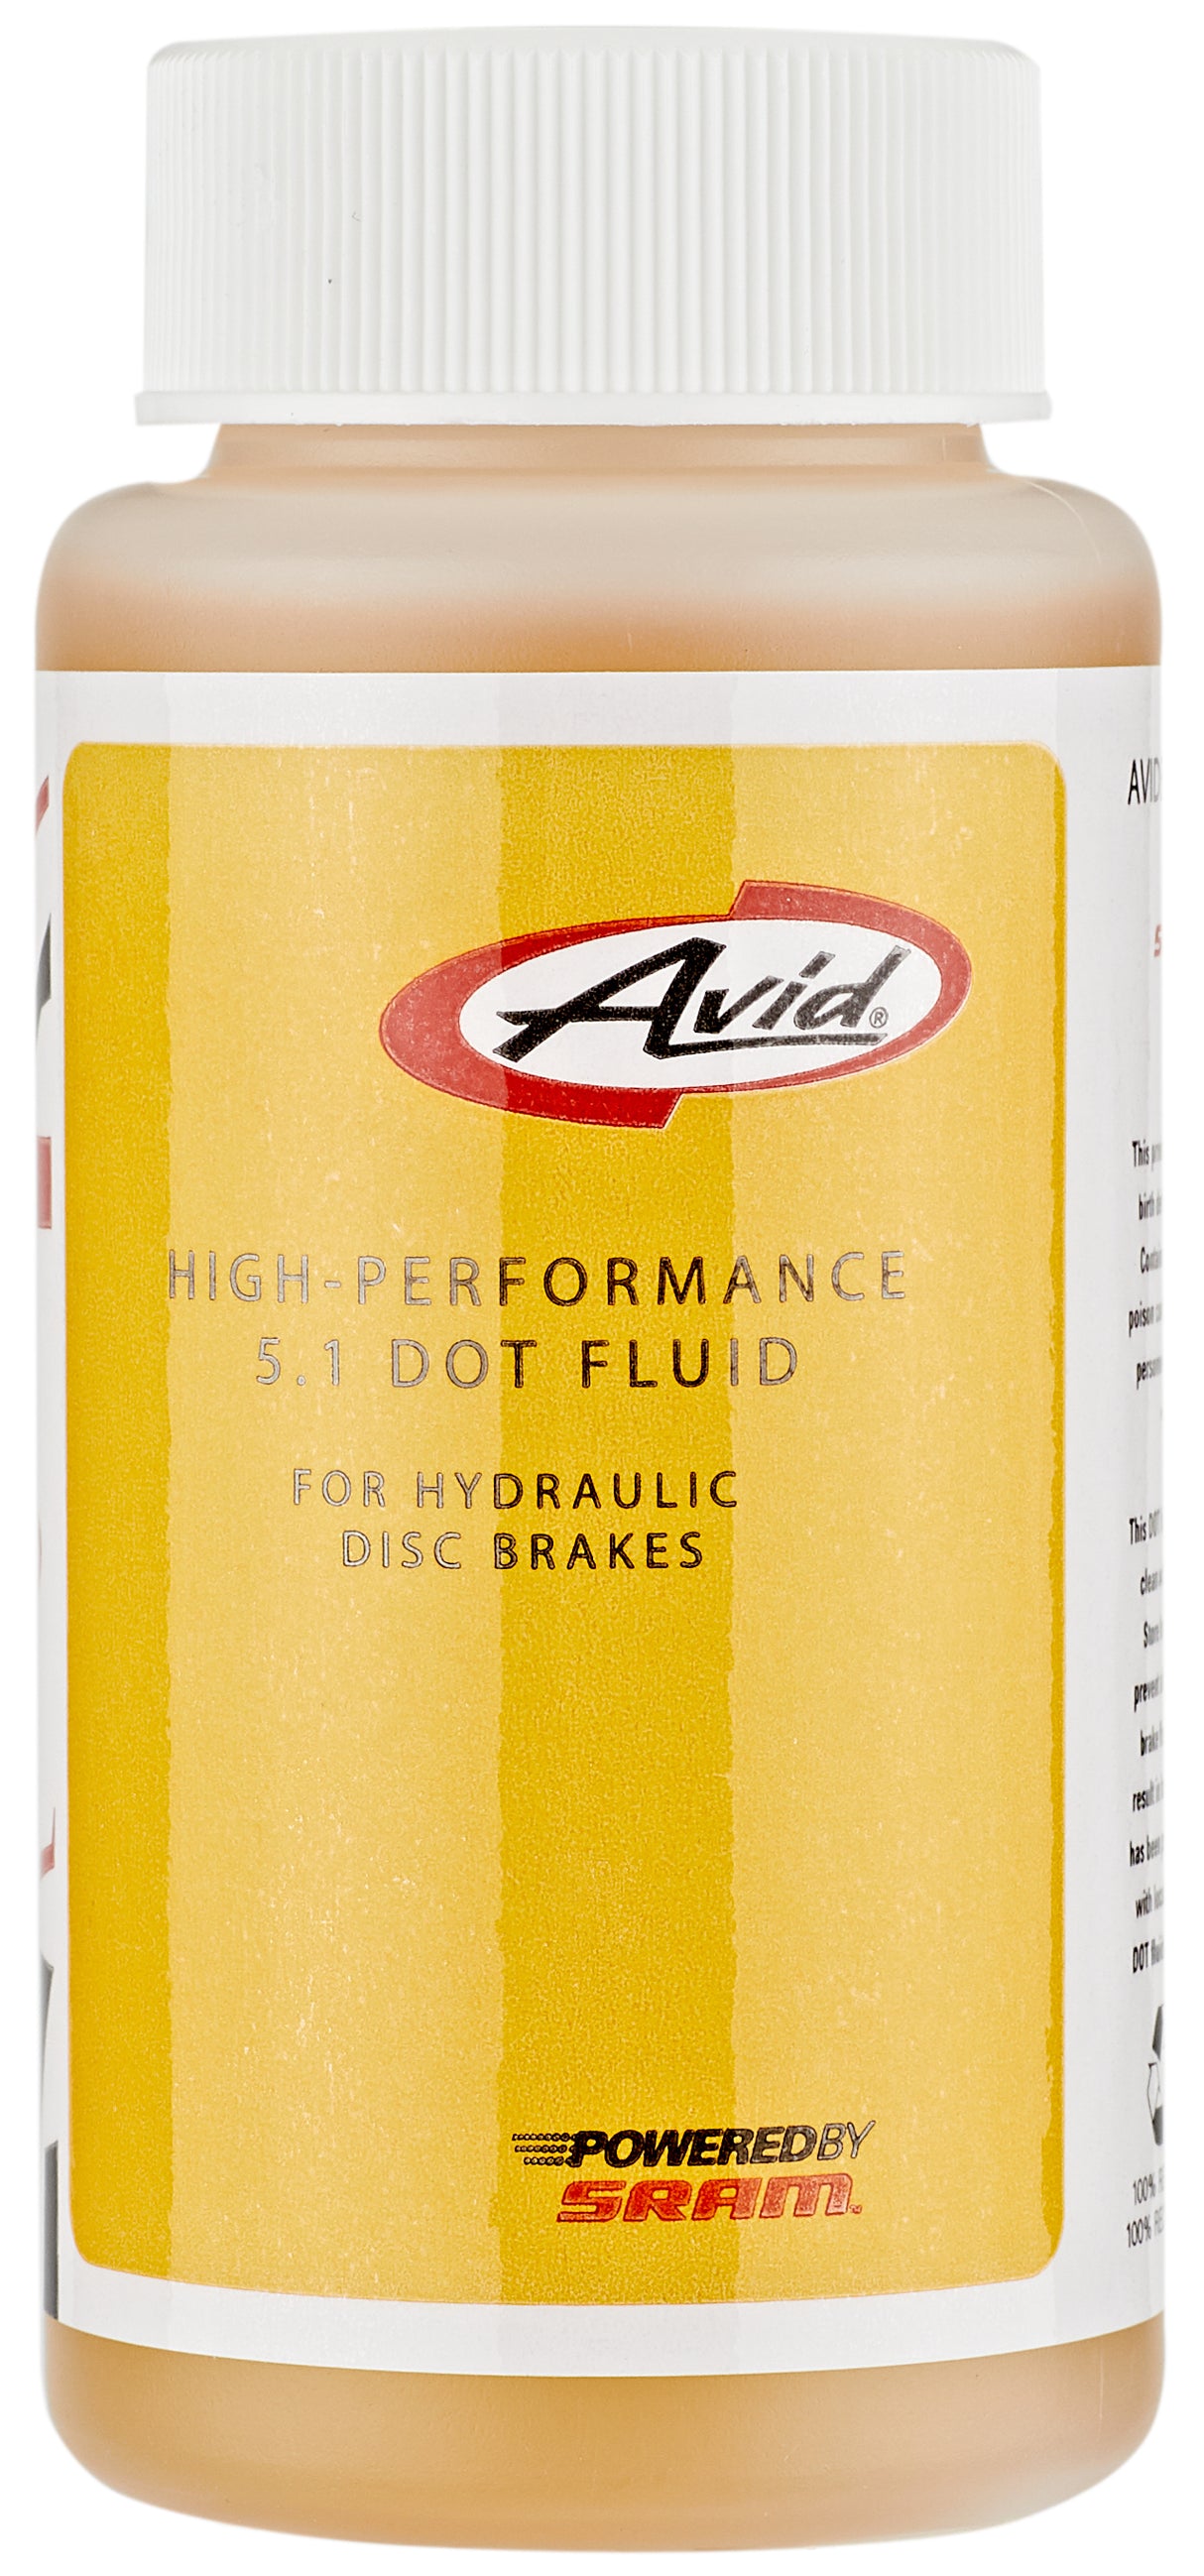 Liquide de frein Avid High Performance 5.1 Dot 115 ml